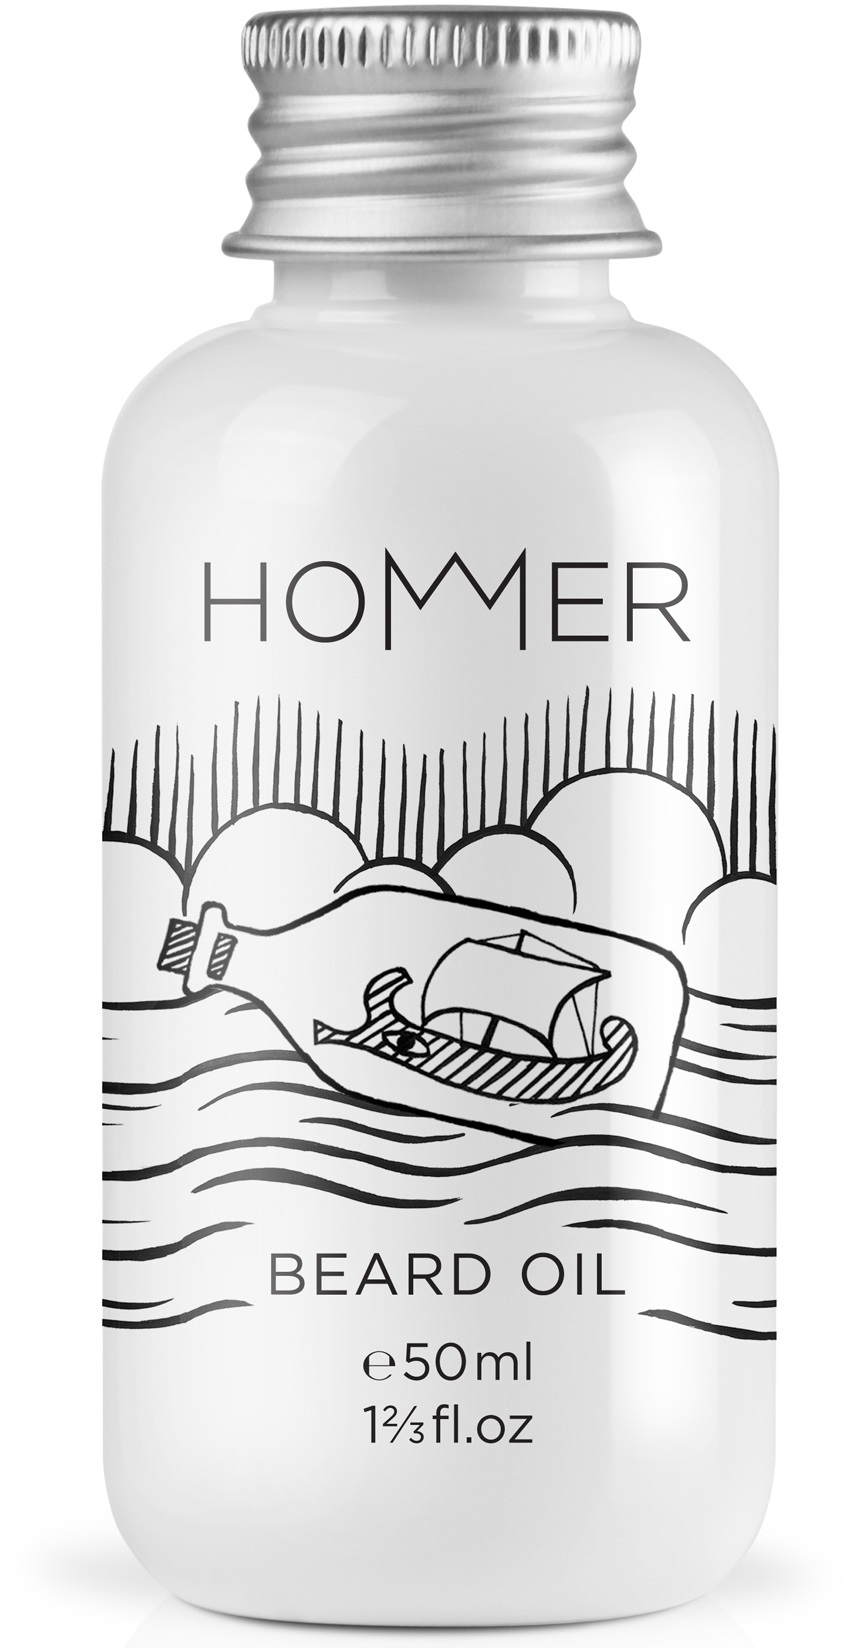 Hommer Beard Oil 50ml